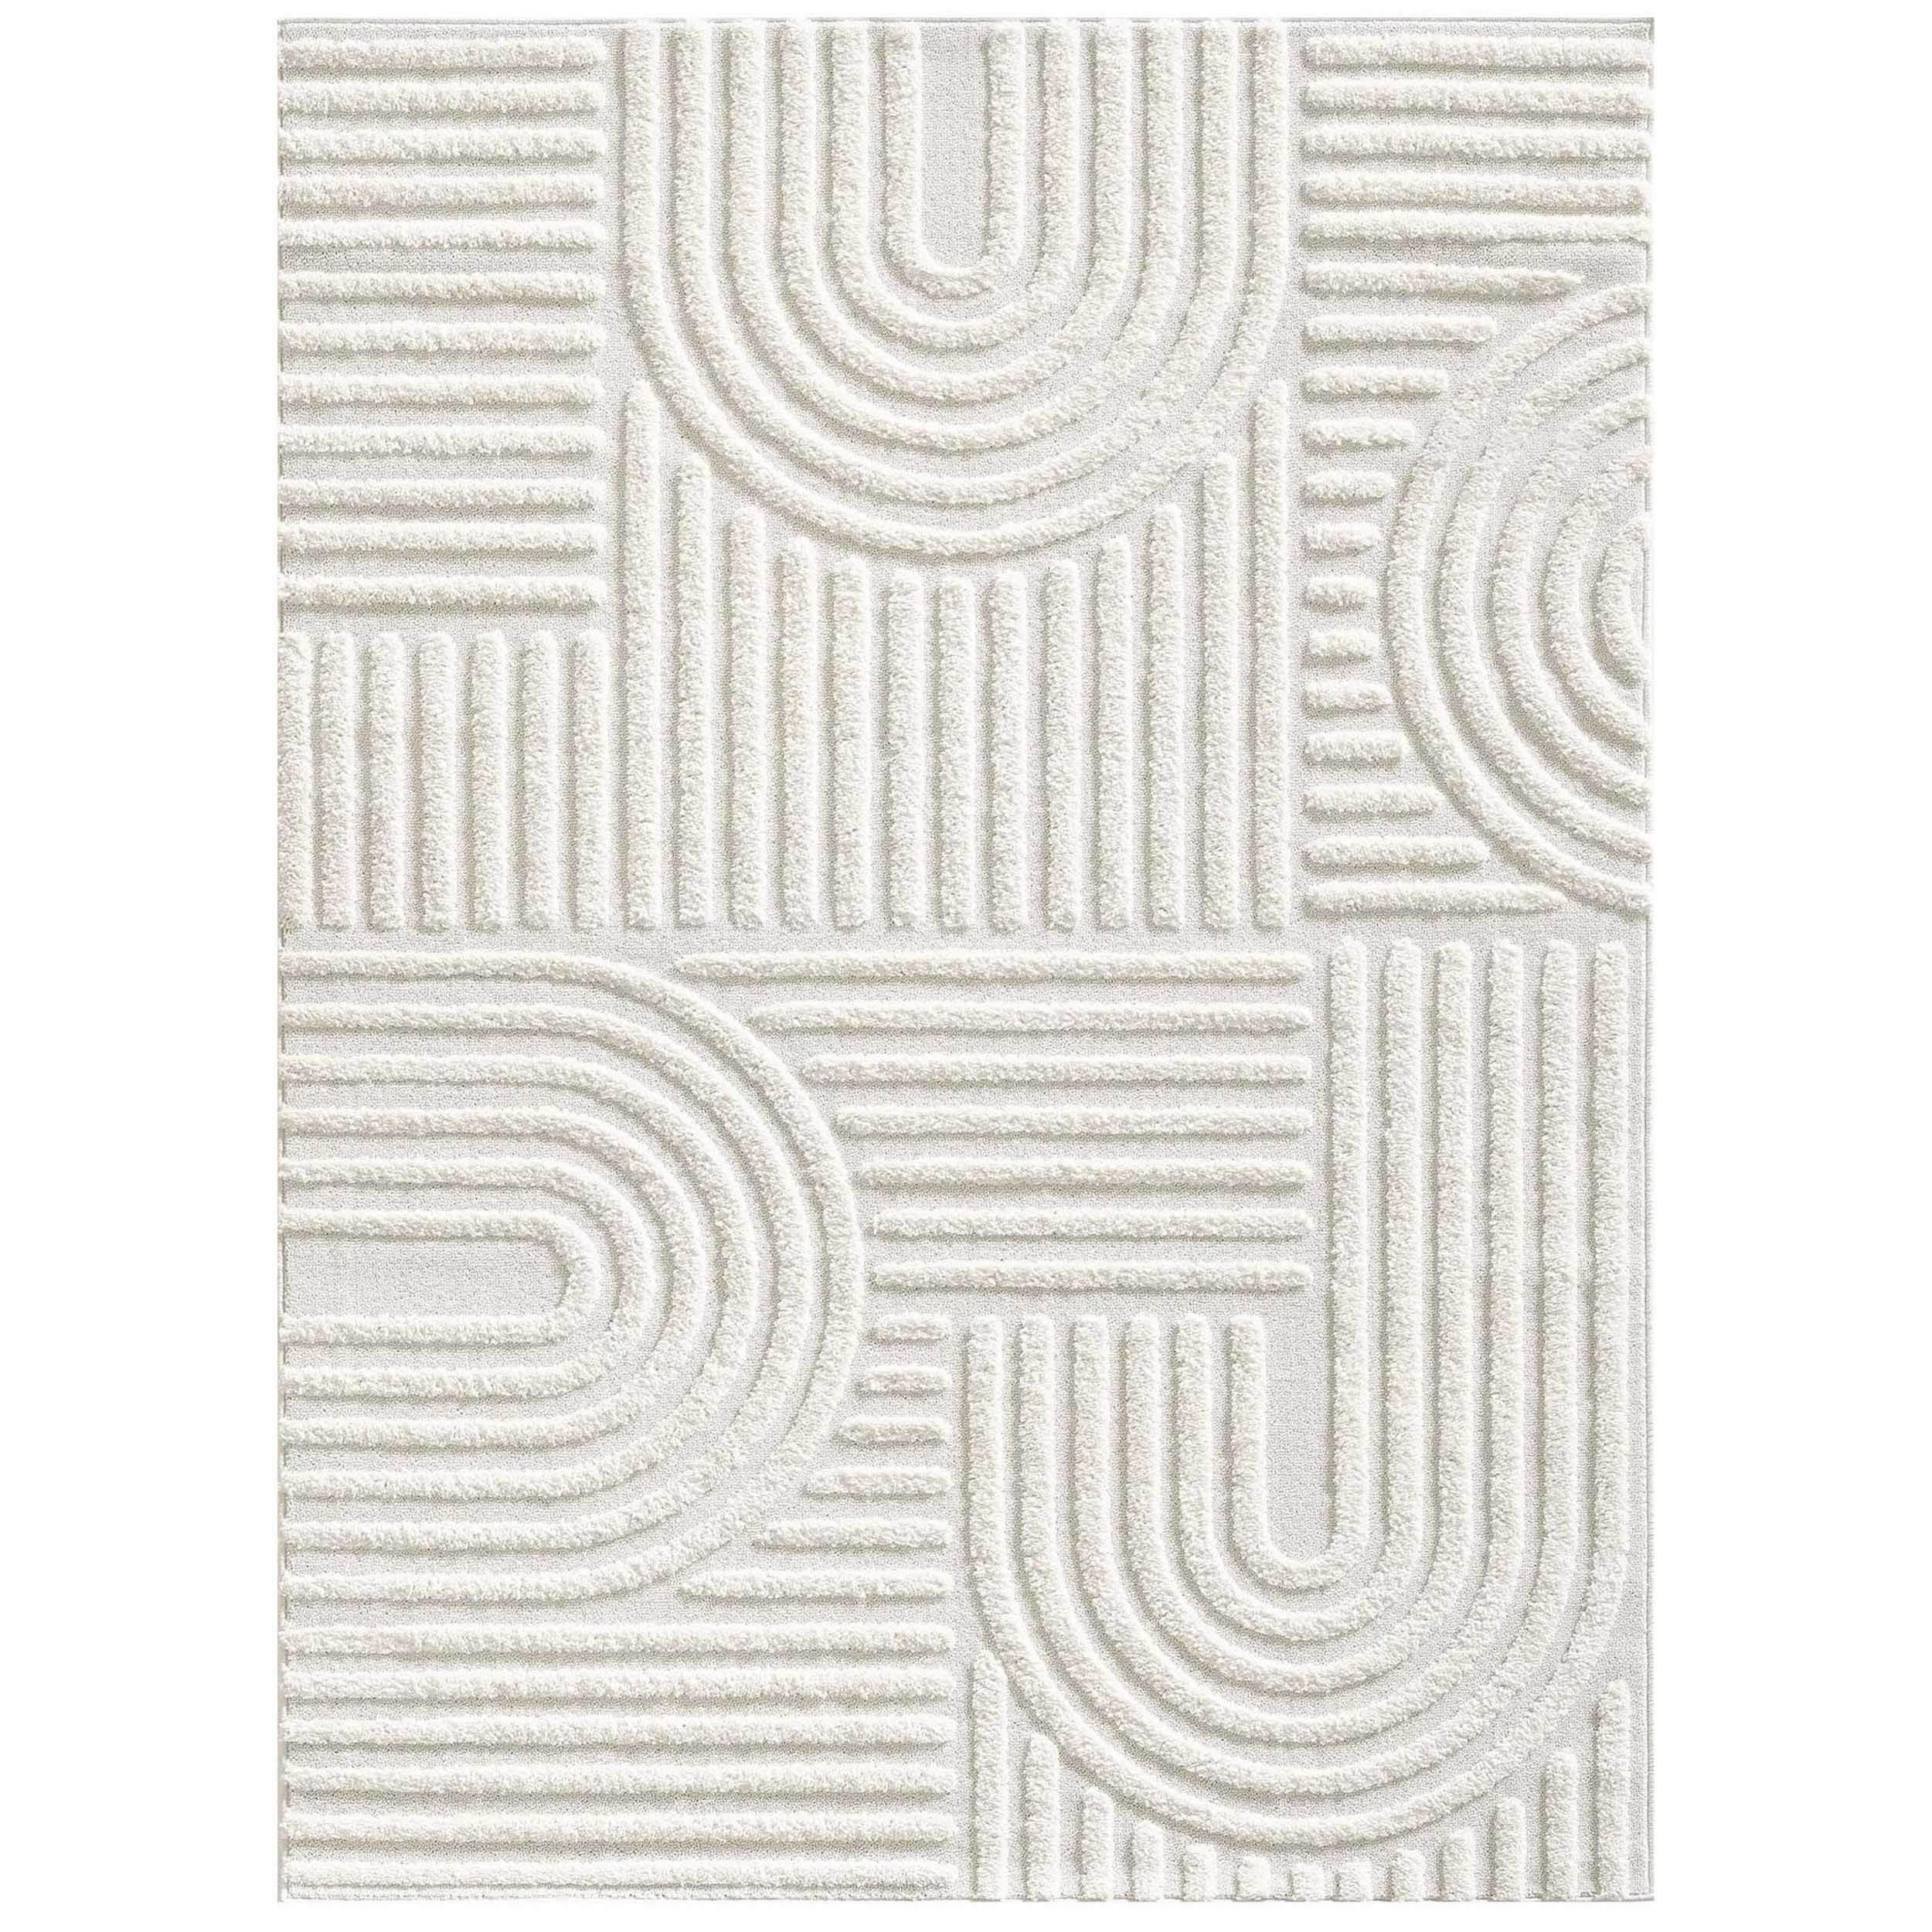  فرش ماشینی ونوچی مدل کوونسی کد 1013 زمینه سفید